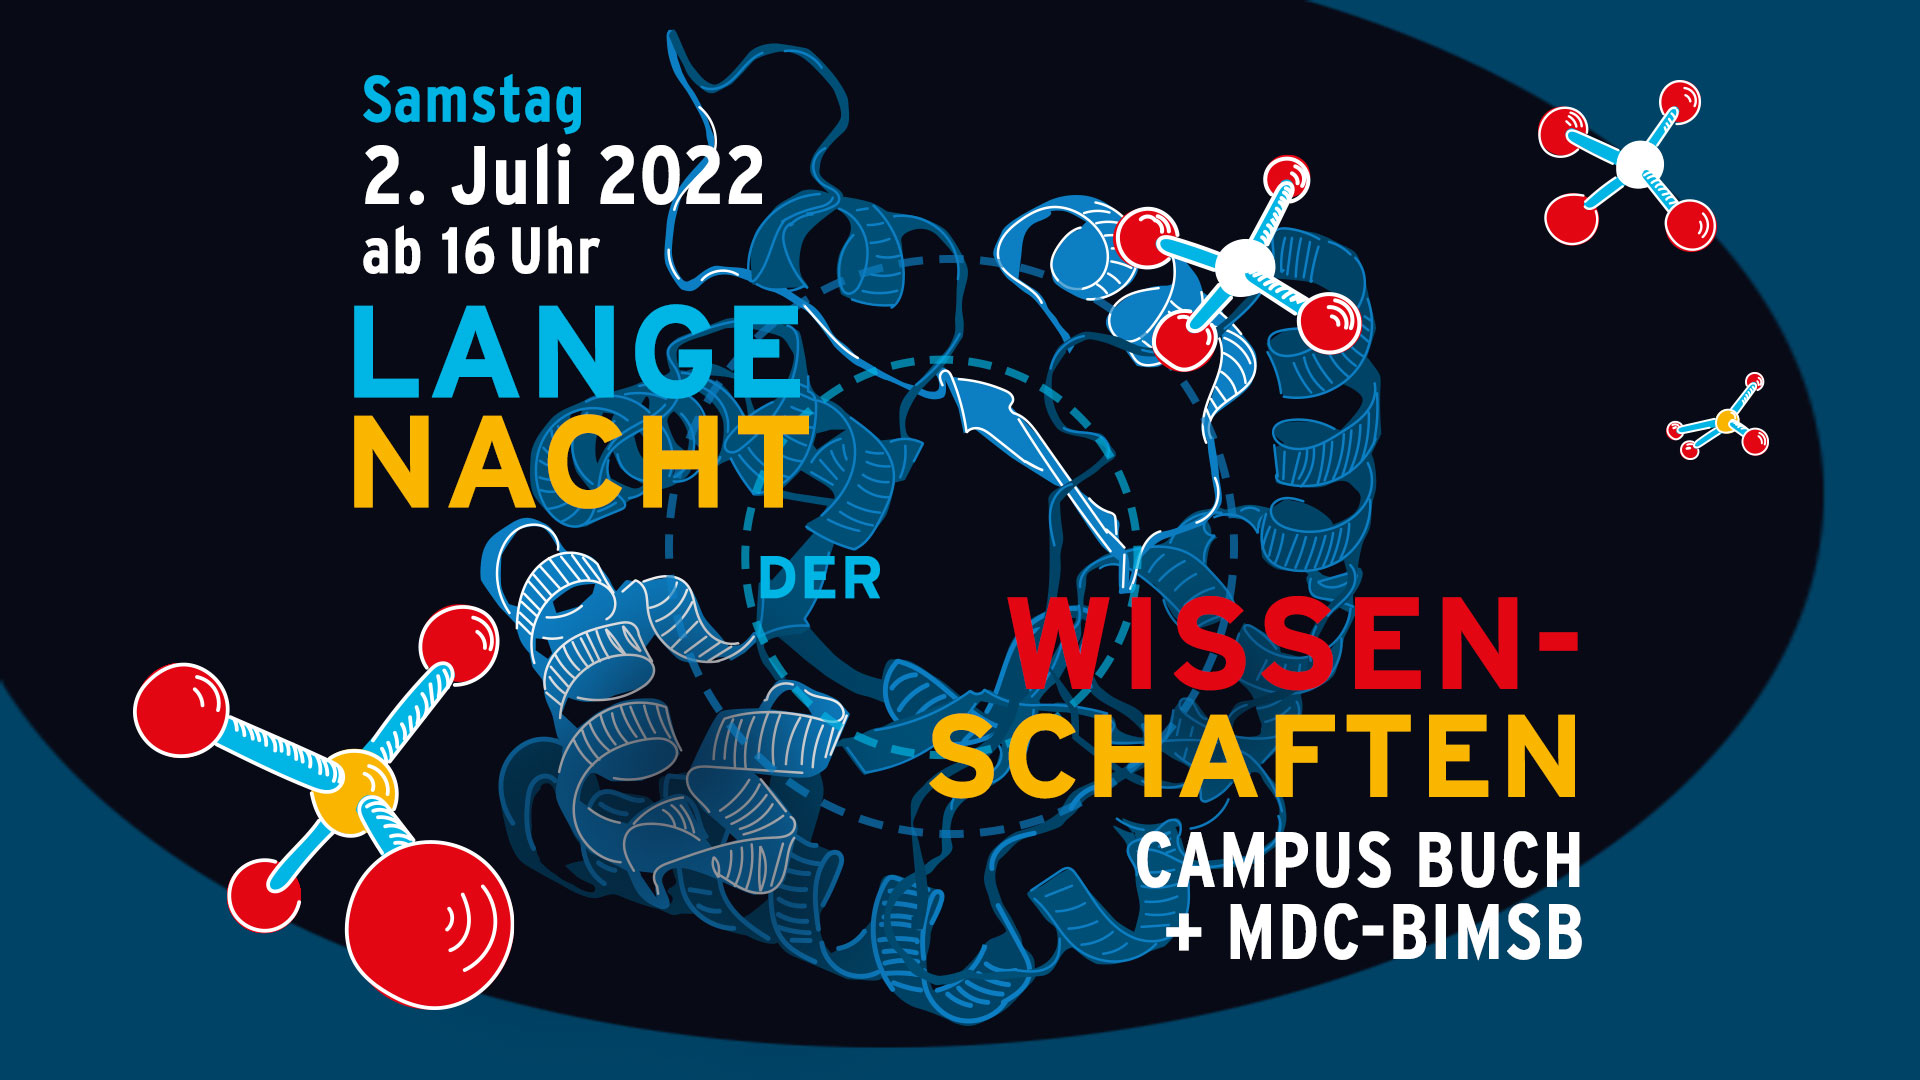 Poster für die Lange Nacht der Wissenschaften auf dem Campus Berlin-Buch und MDC-BIMSB